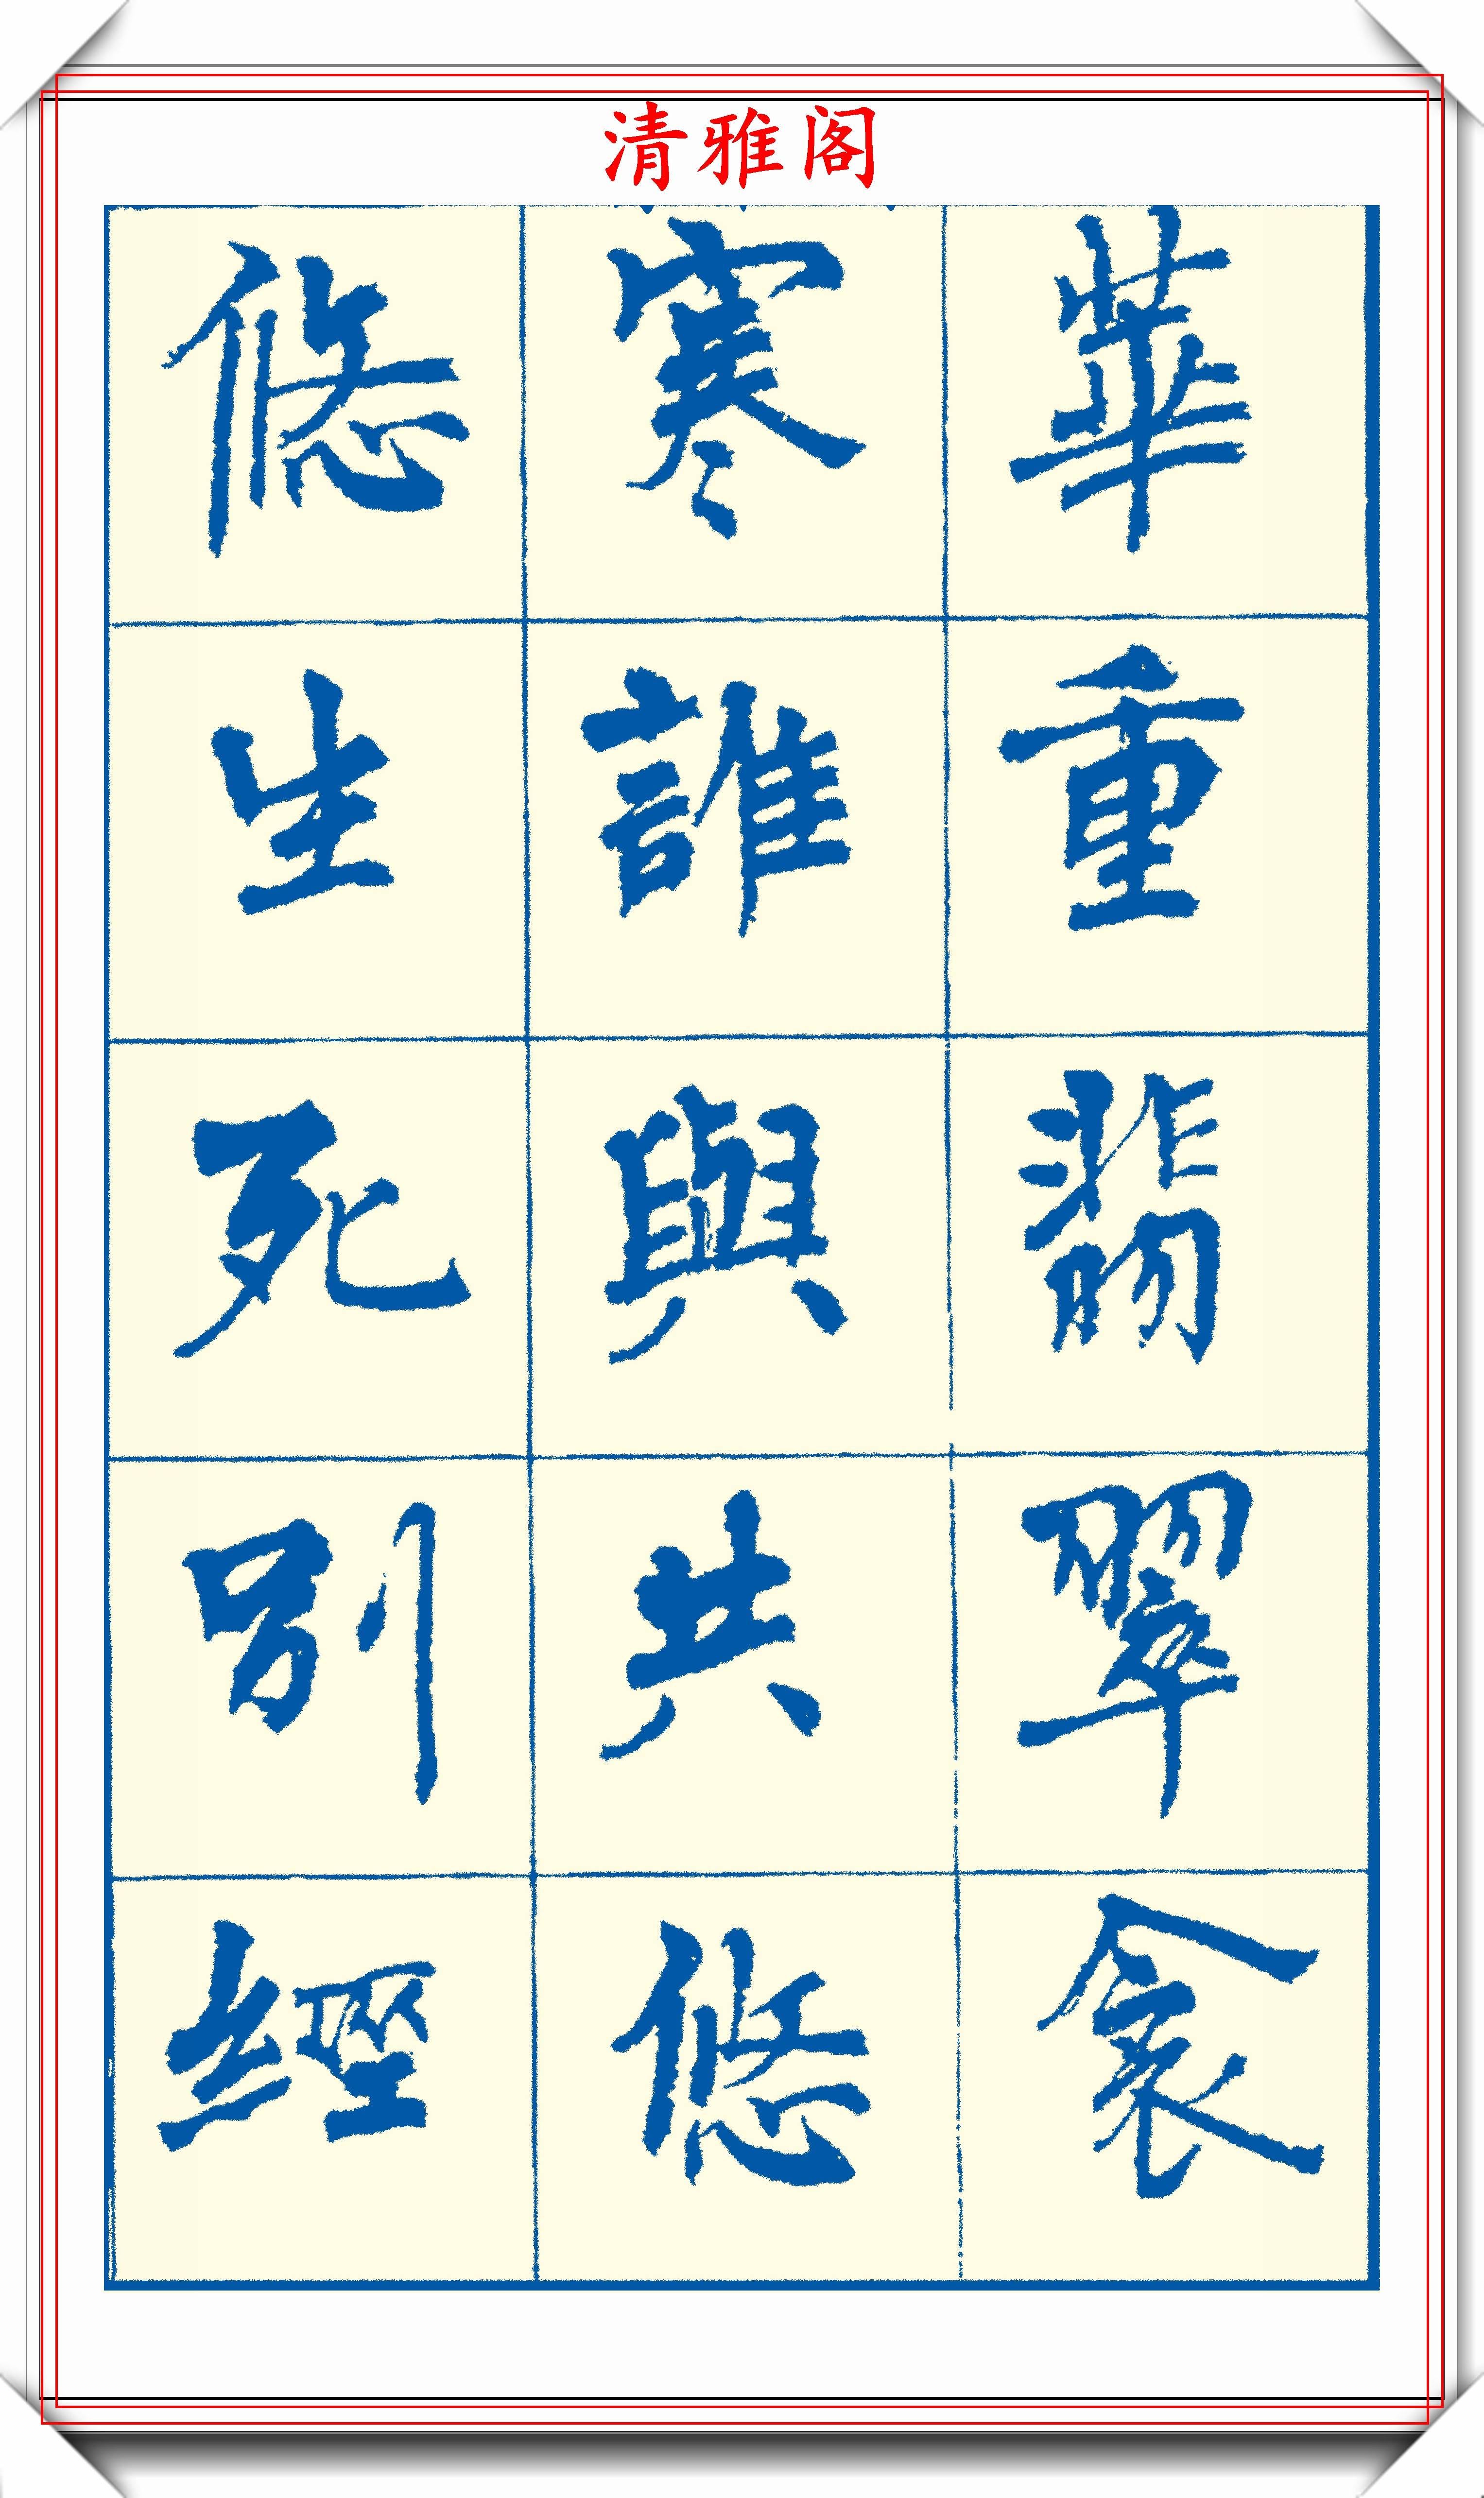 周慧珺新版楷书字帖欣赏,800个常用汉字笔法演示,好帖请收藏